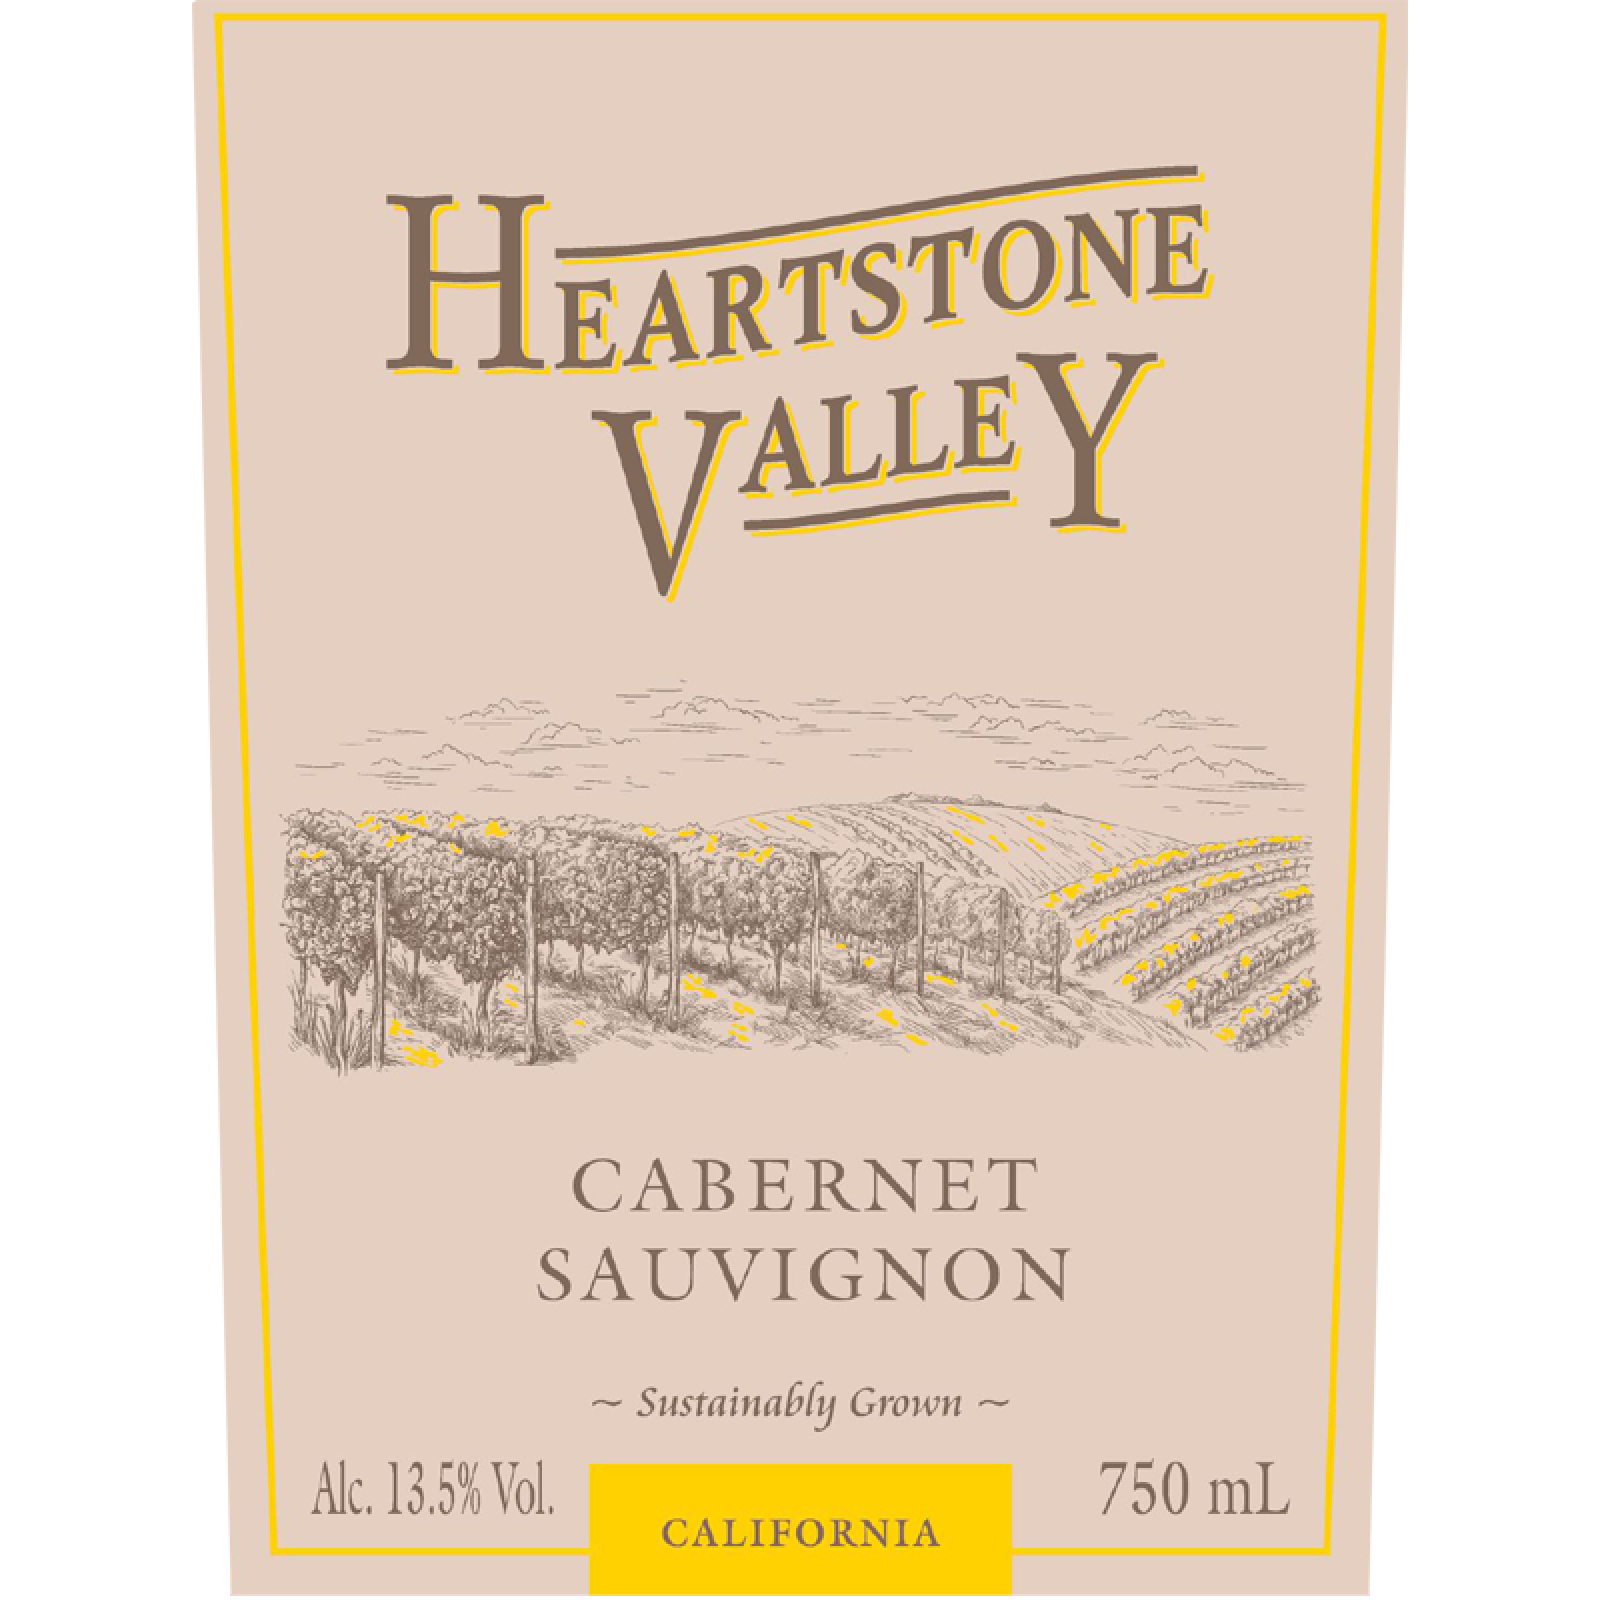 Heartstone Valley Cabernet Sauvignon 2018